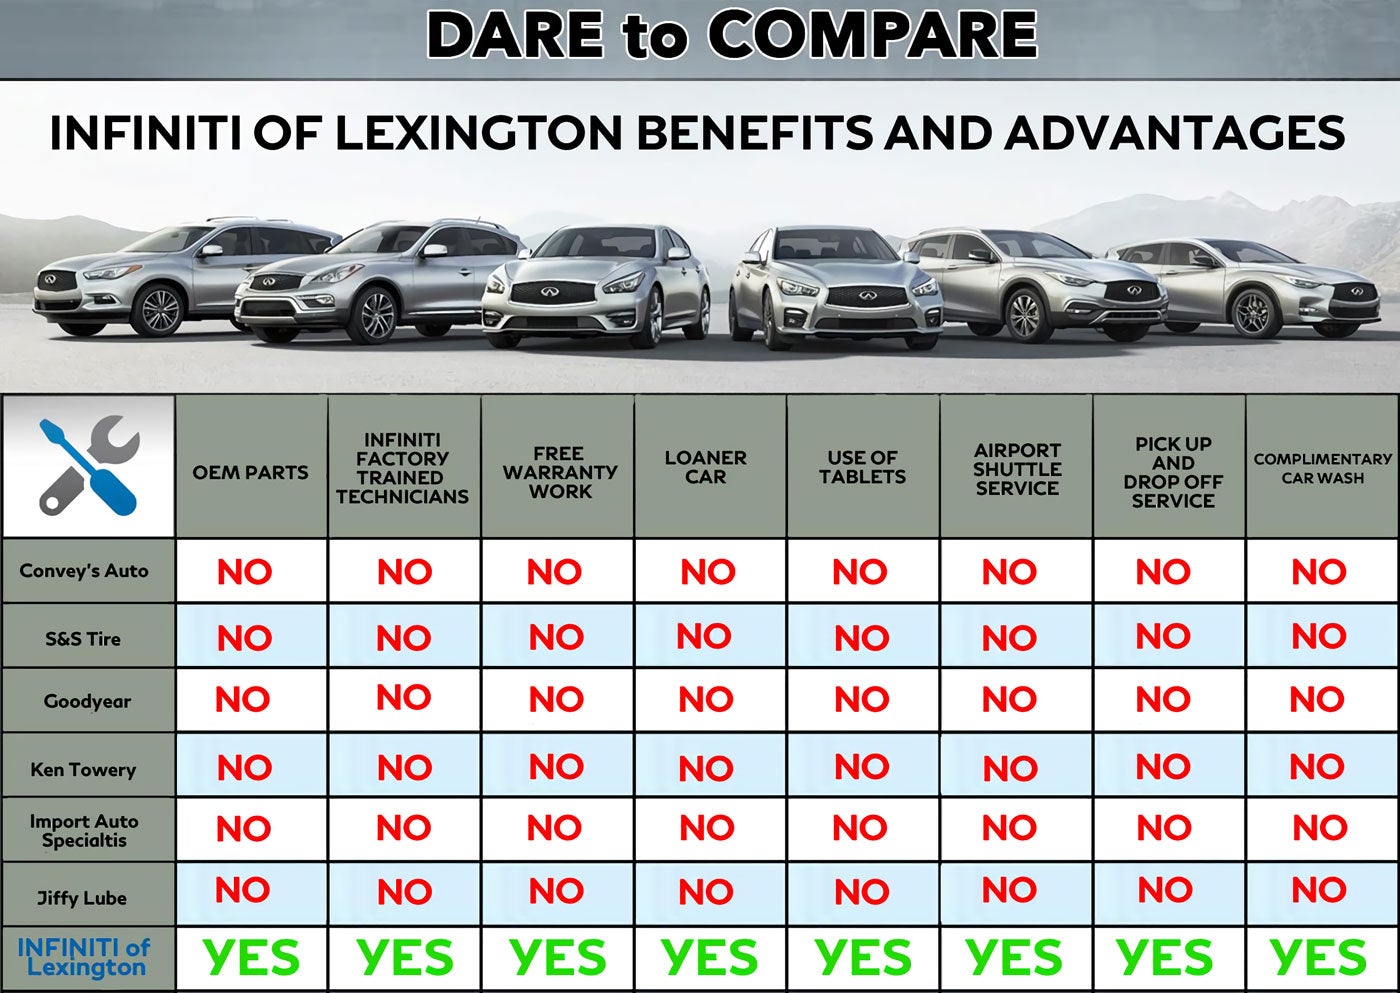 INFINITI Of Lexington Benefits and Advantages comparison table